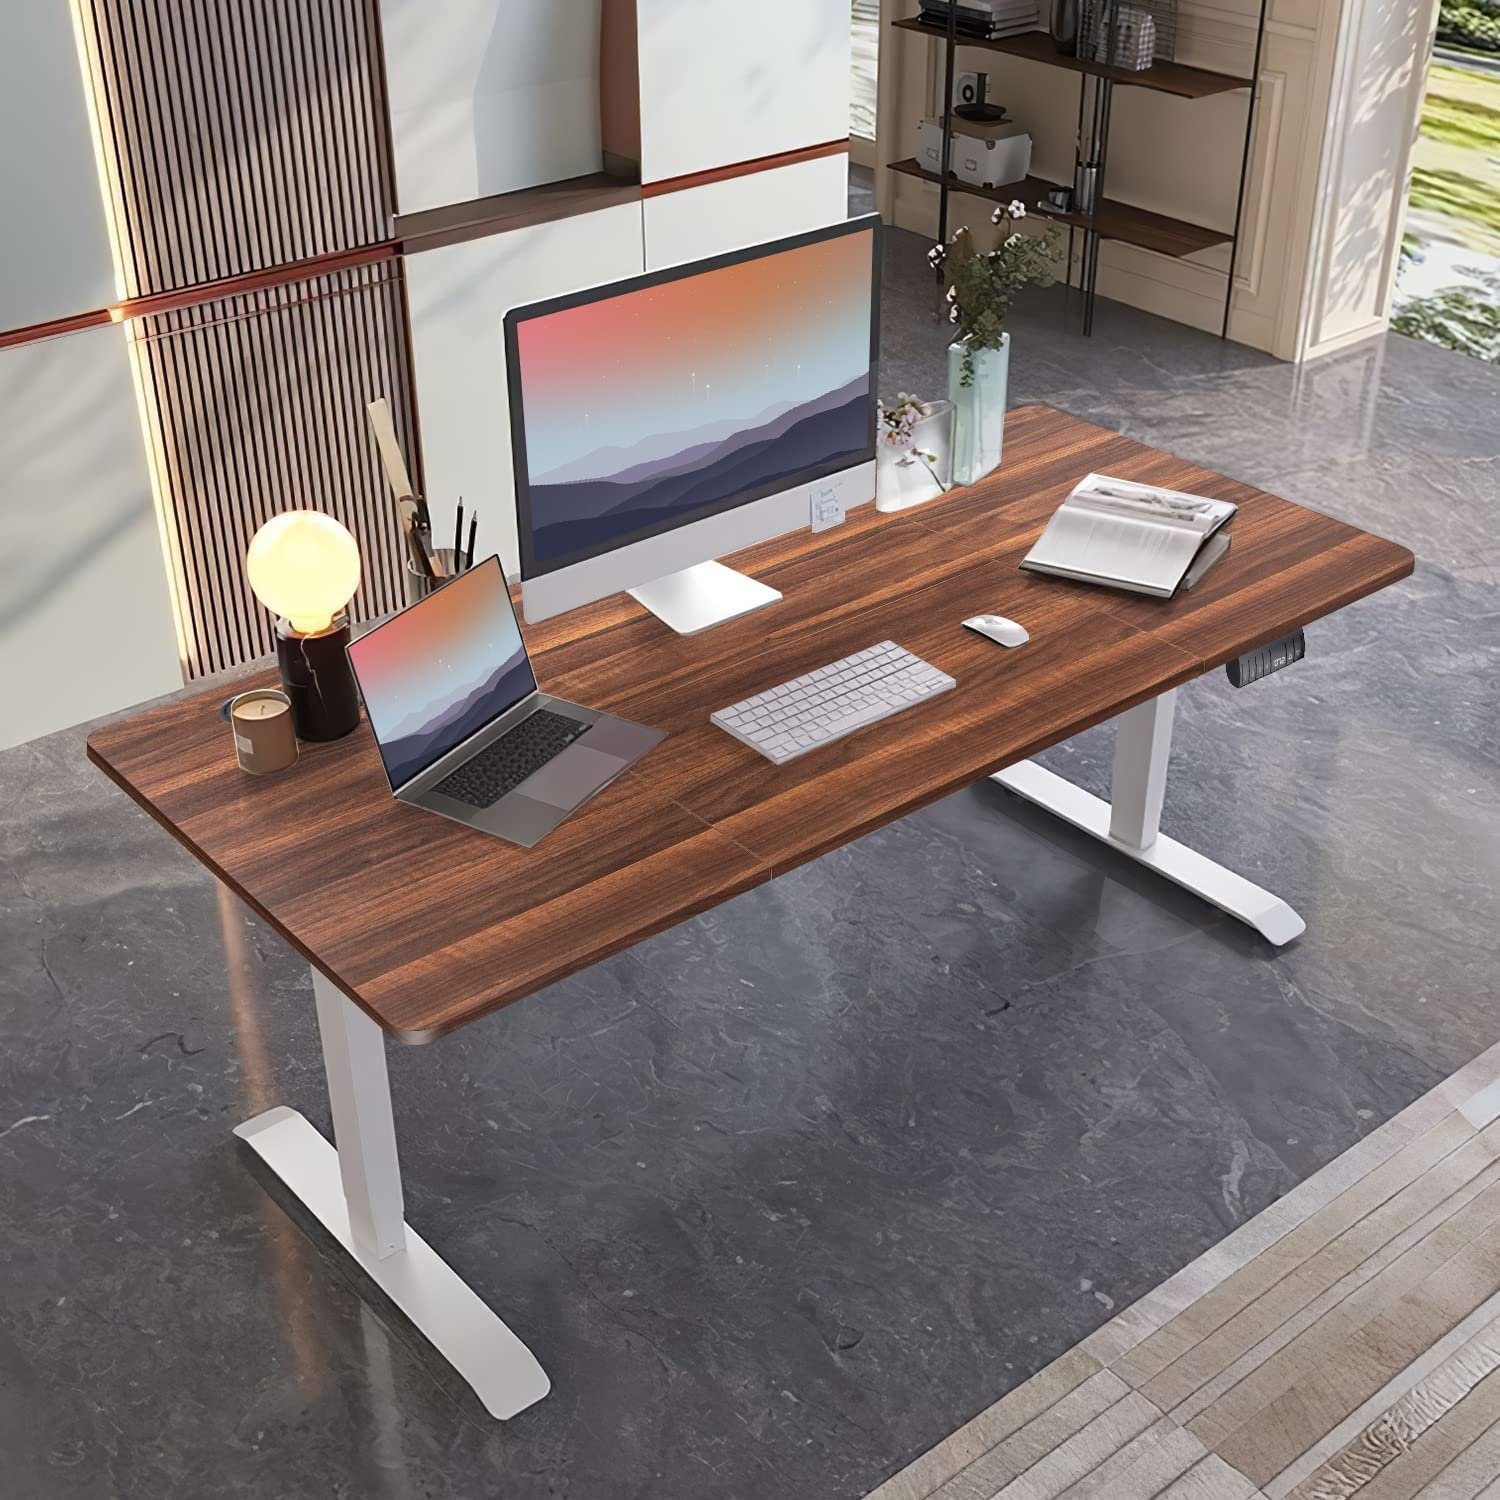 Walnuss Schreibtisch Schreibtisch, HOMALL Tischplatte Höhenverstellbarer Vierteilige Elektrisch